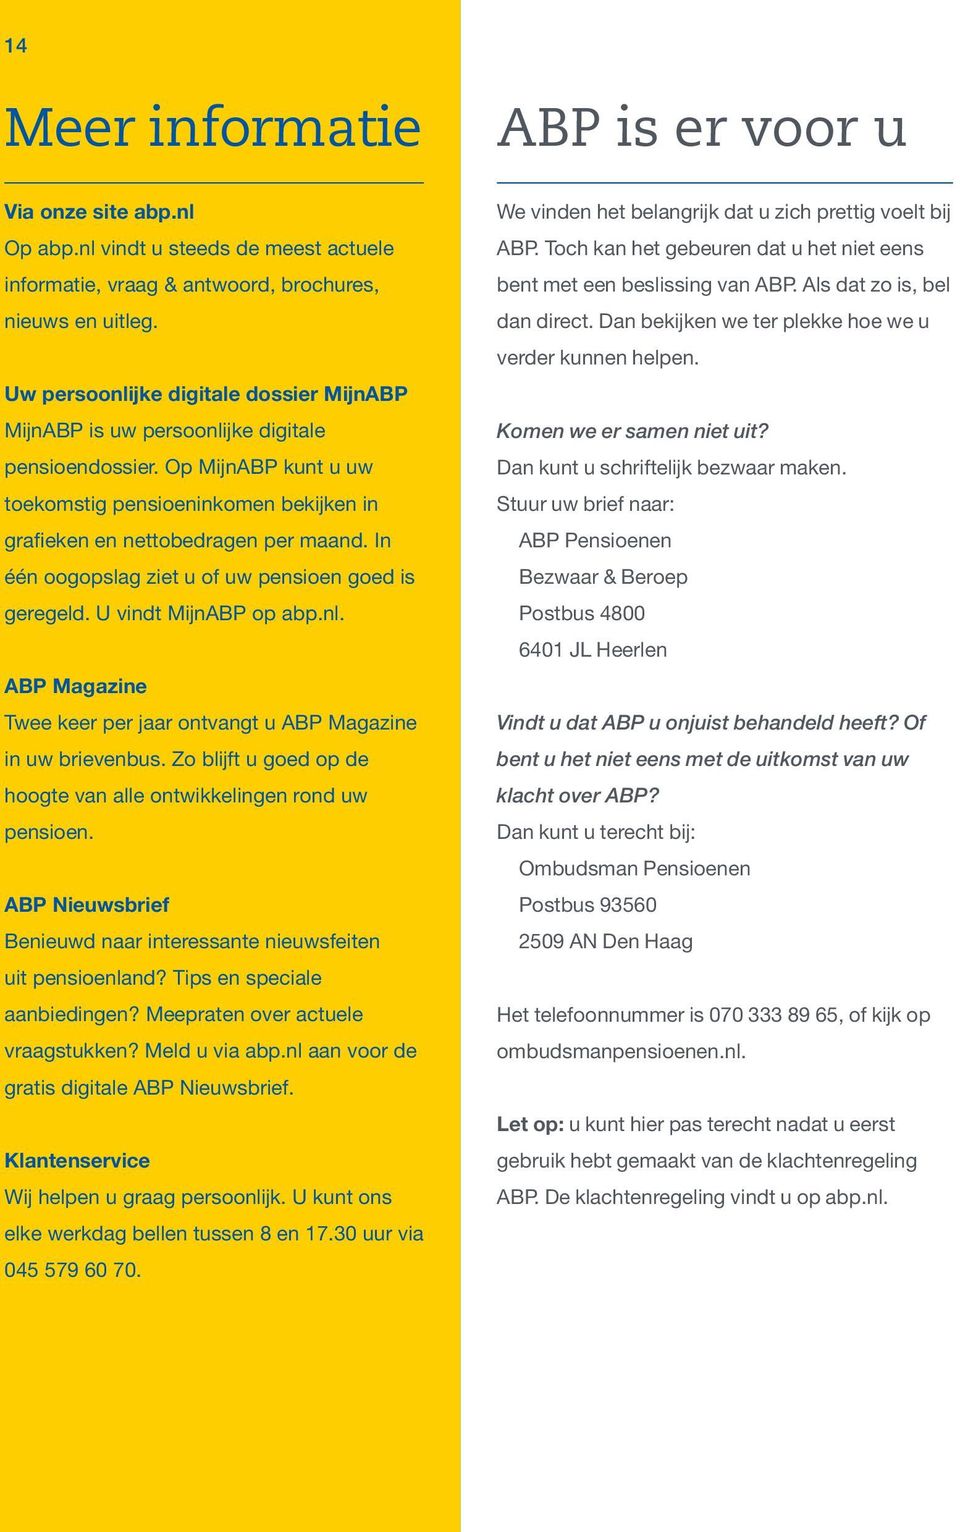 In één oogopslag ziet u of uw pensioen goed is geregeld. U vindt MijnABP op abp.nl. ABP Magazine Twee keer per jaar ontvangt u ABP Magazine in uw brievenbus.